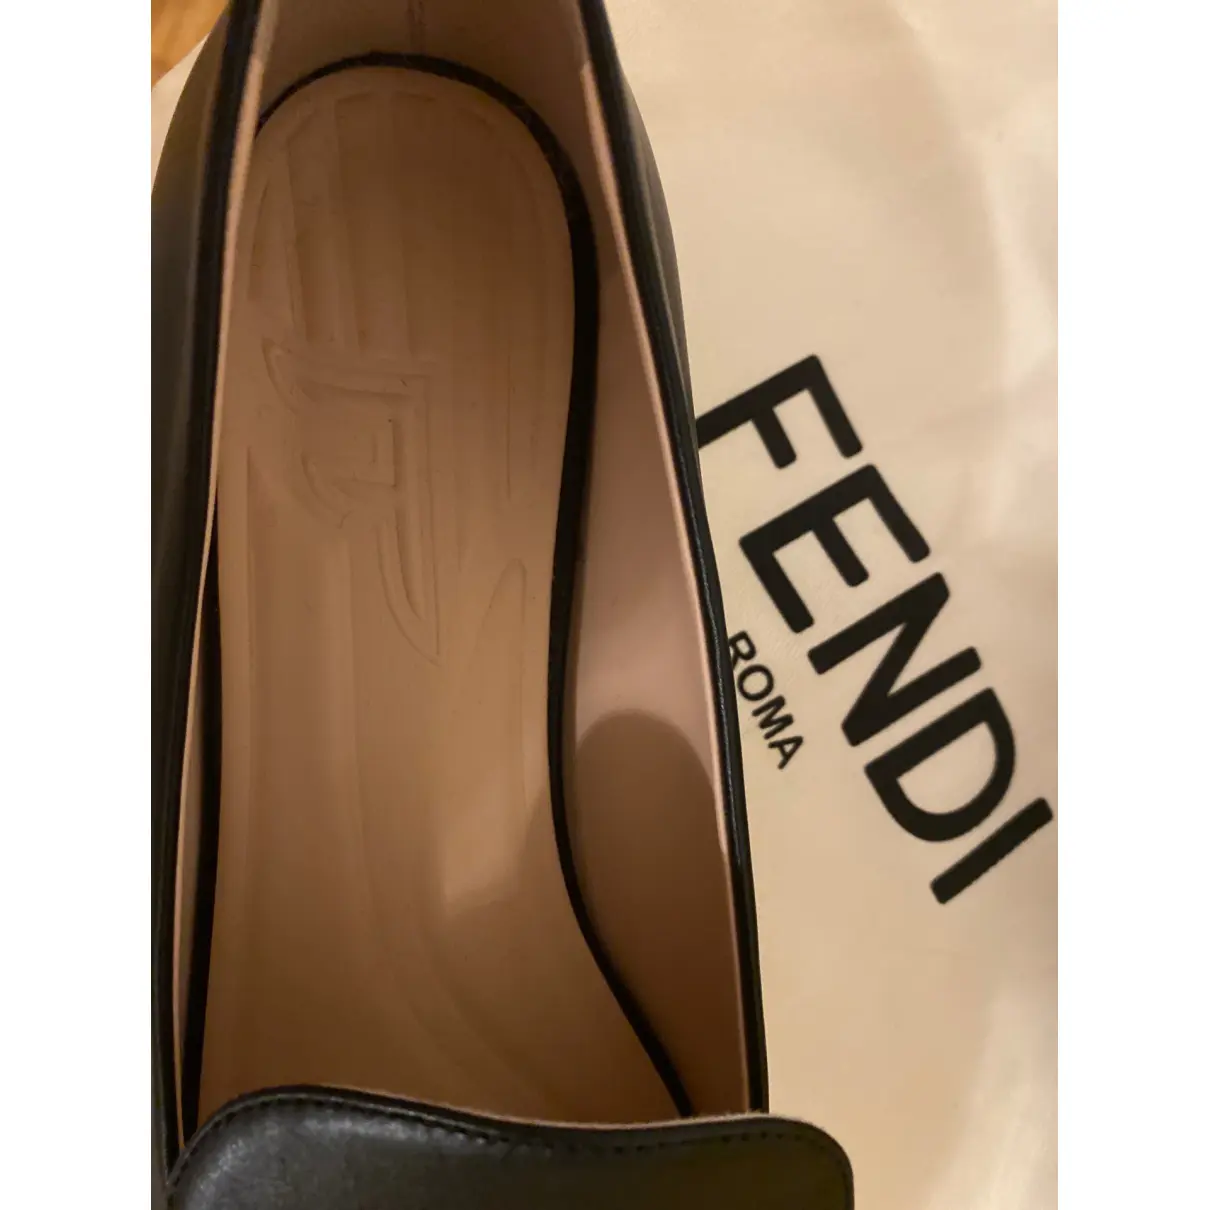 Leather flats Fendi